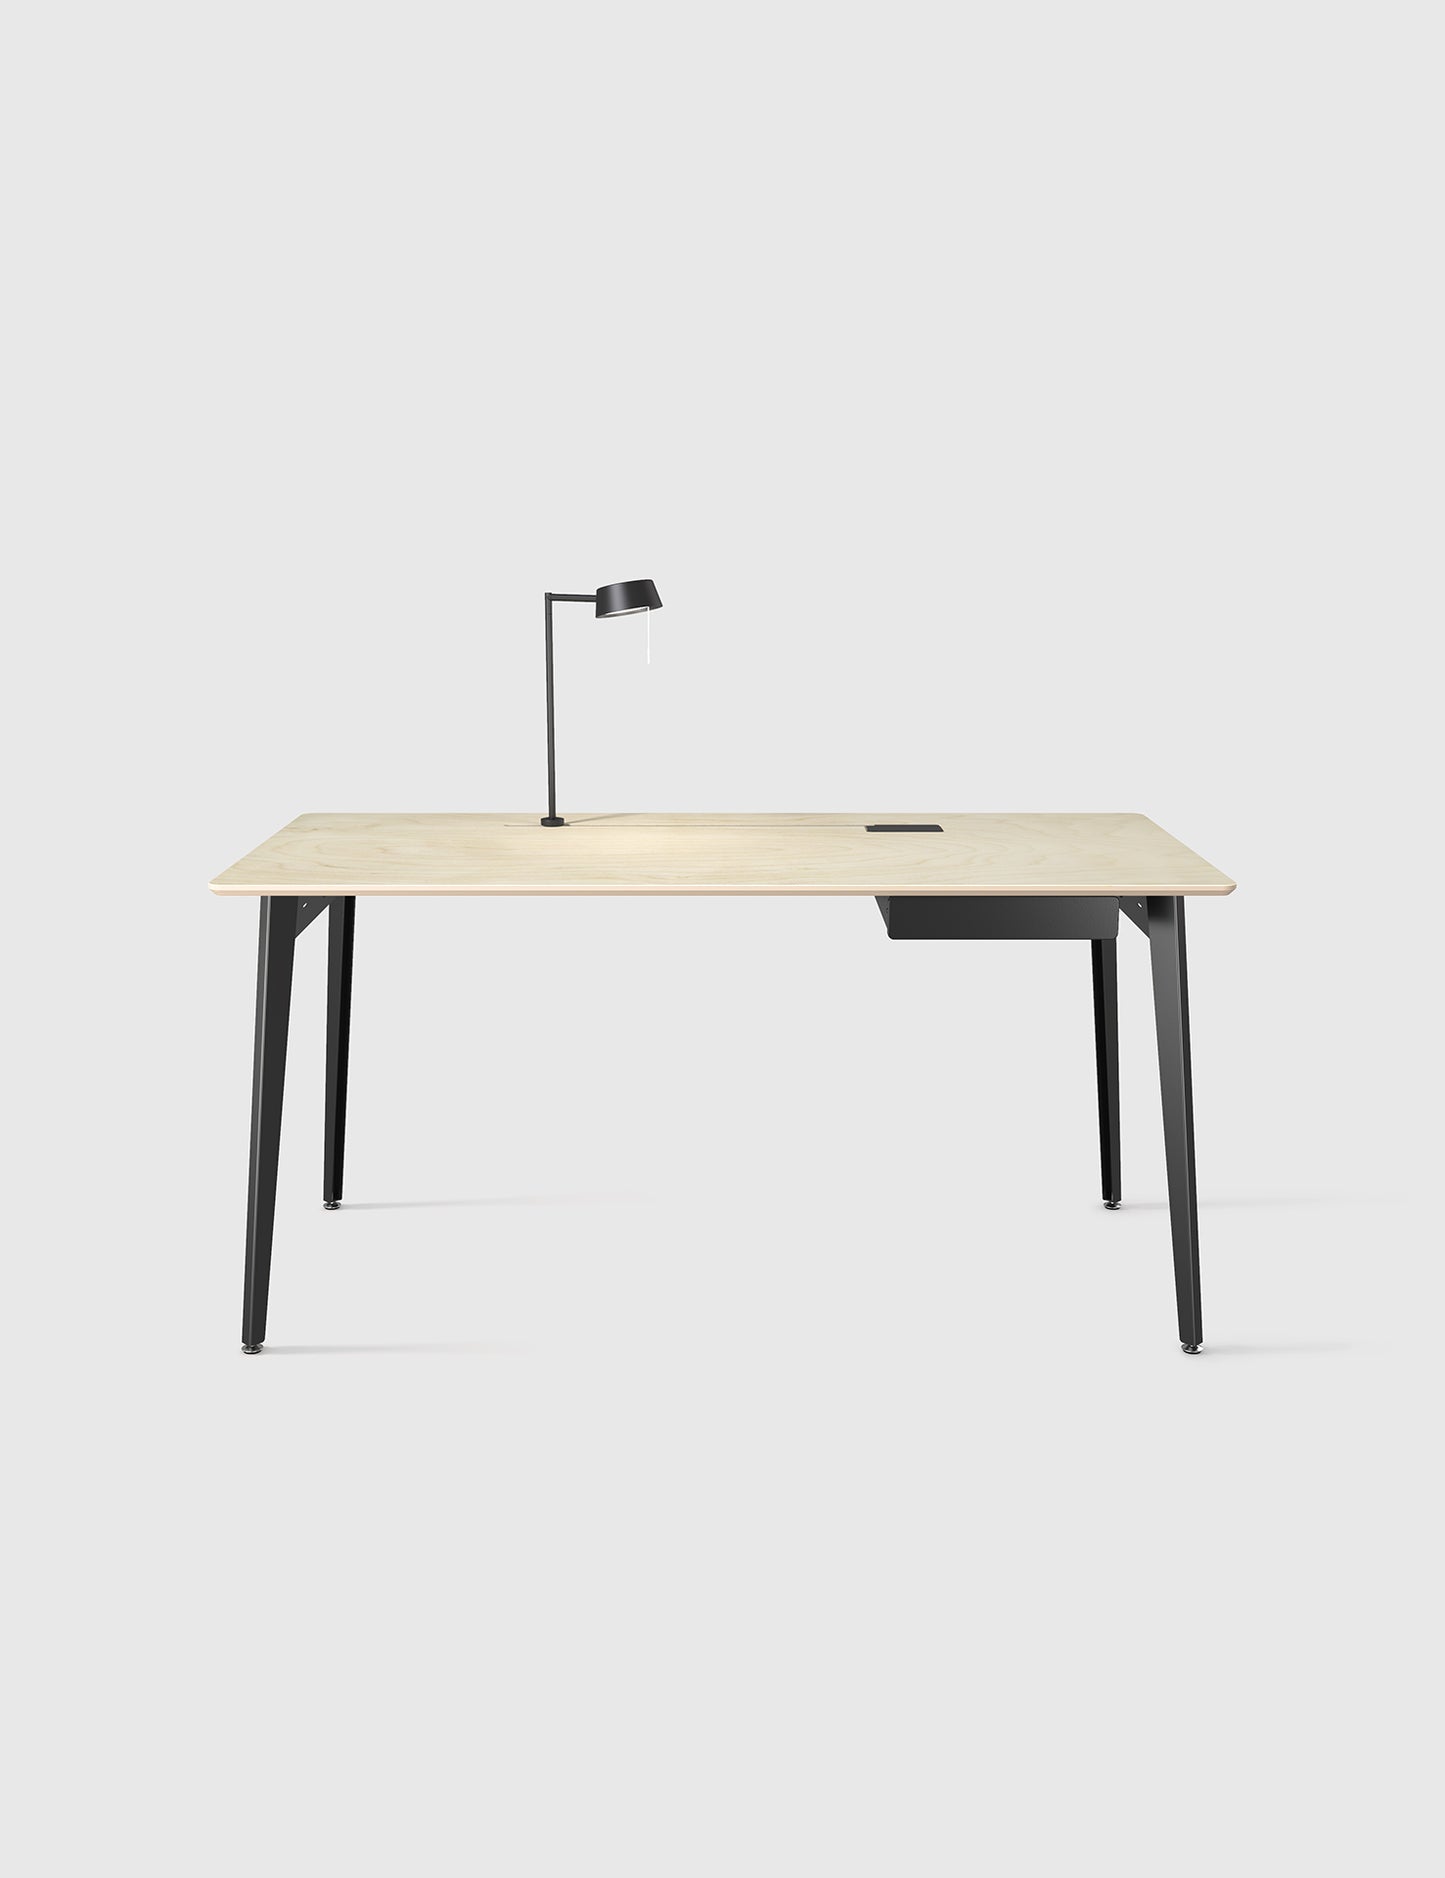 שולחן עבודה מינימליסטי, שולחן עבודה עם מנורה ומגירה, שולחן עבודה סקנדינבי, שולחן עבודה נורדי